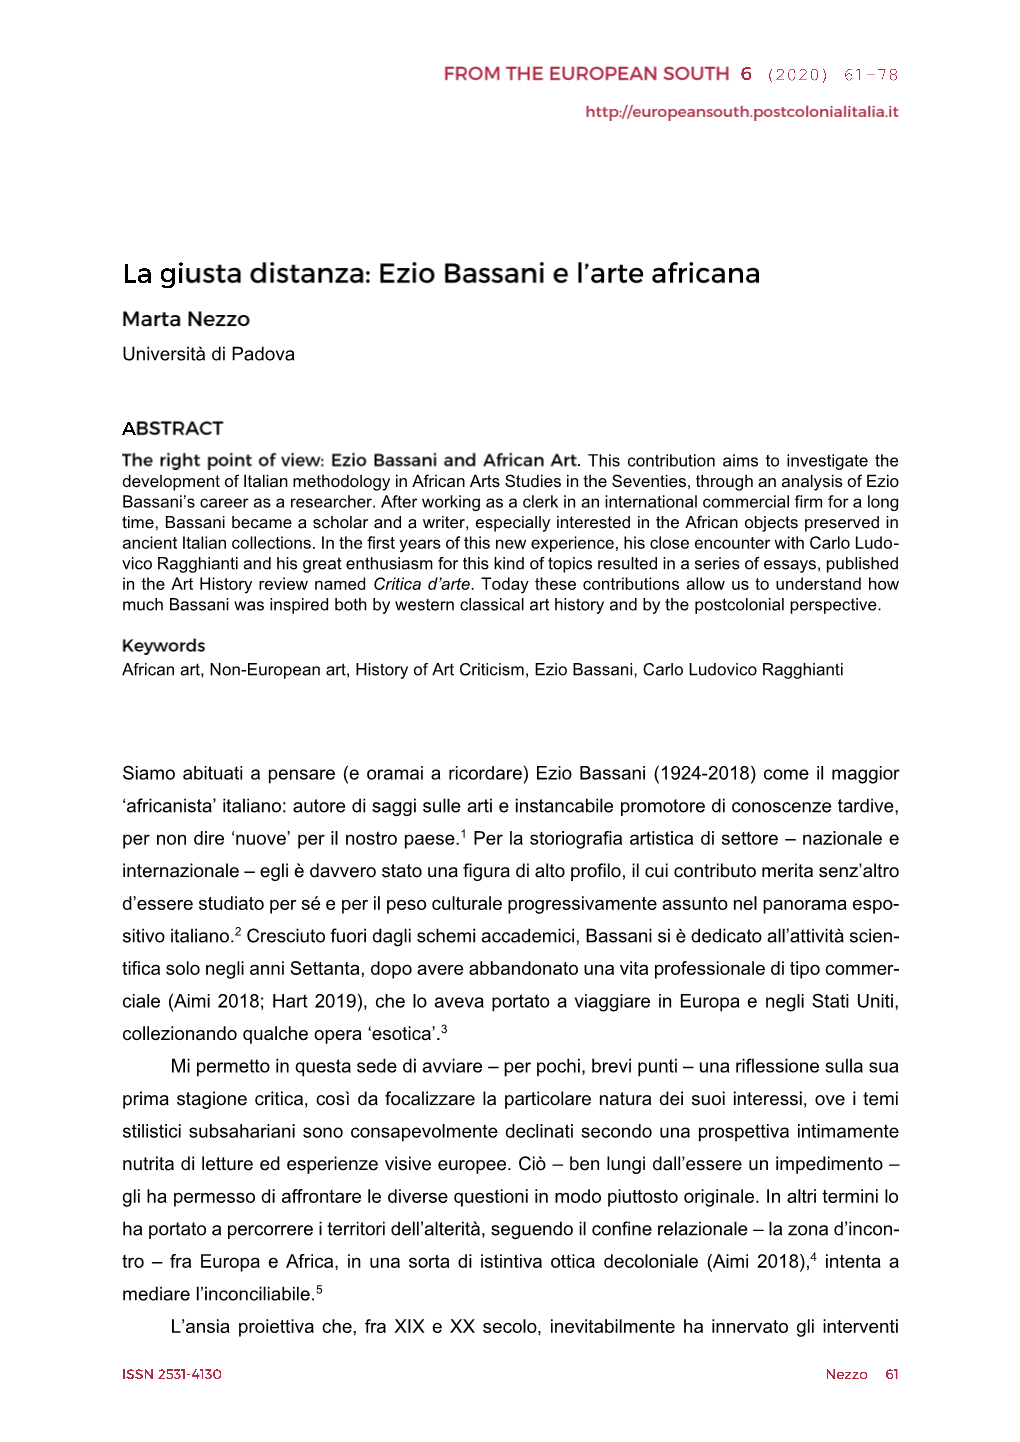 Ezio Bassani (1924-2018) Come Il Maggior 'Africanista'